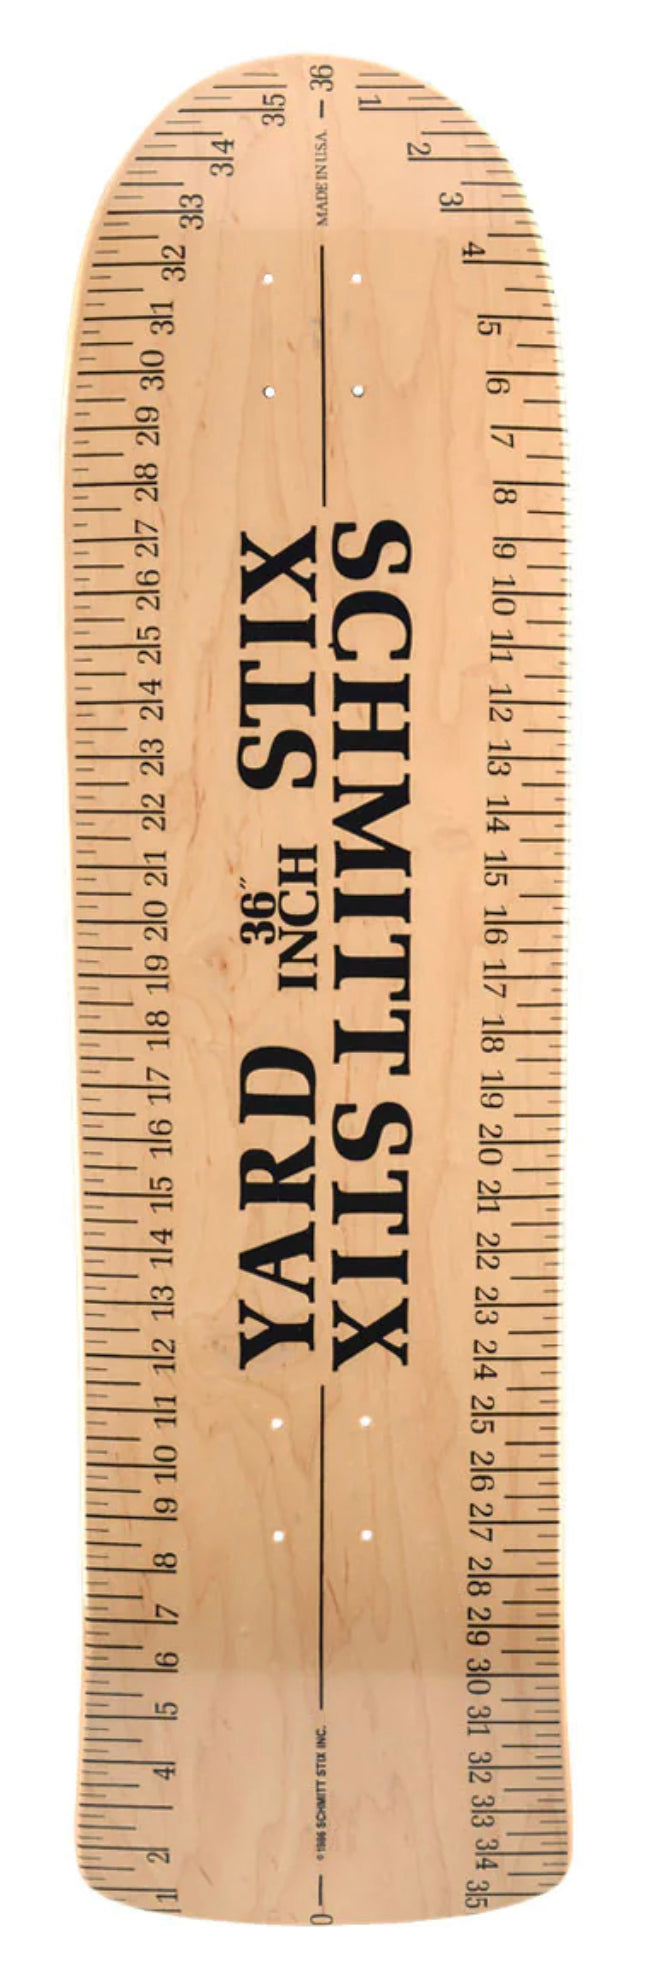 Schmitt Stix Yard Stick Skateboard Deck- 9.625x36